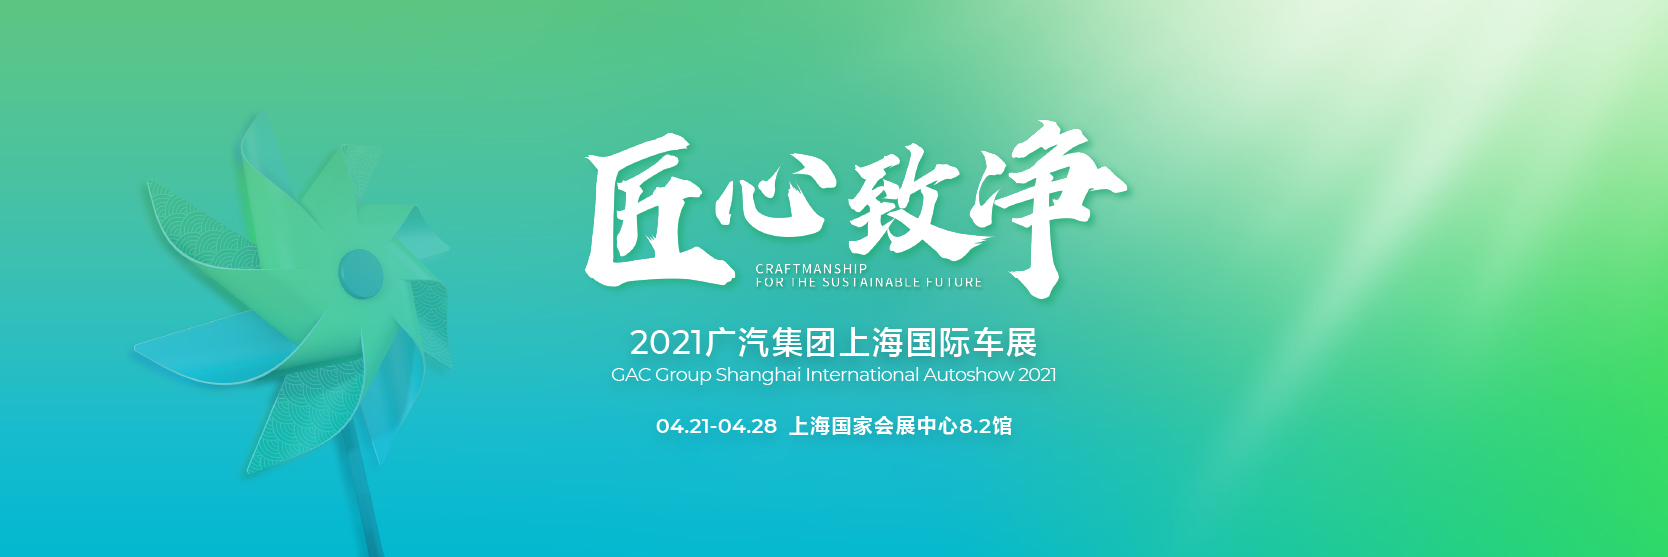 2021上海国际车展